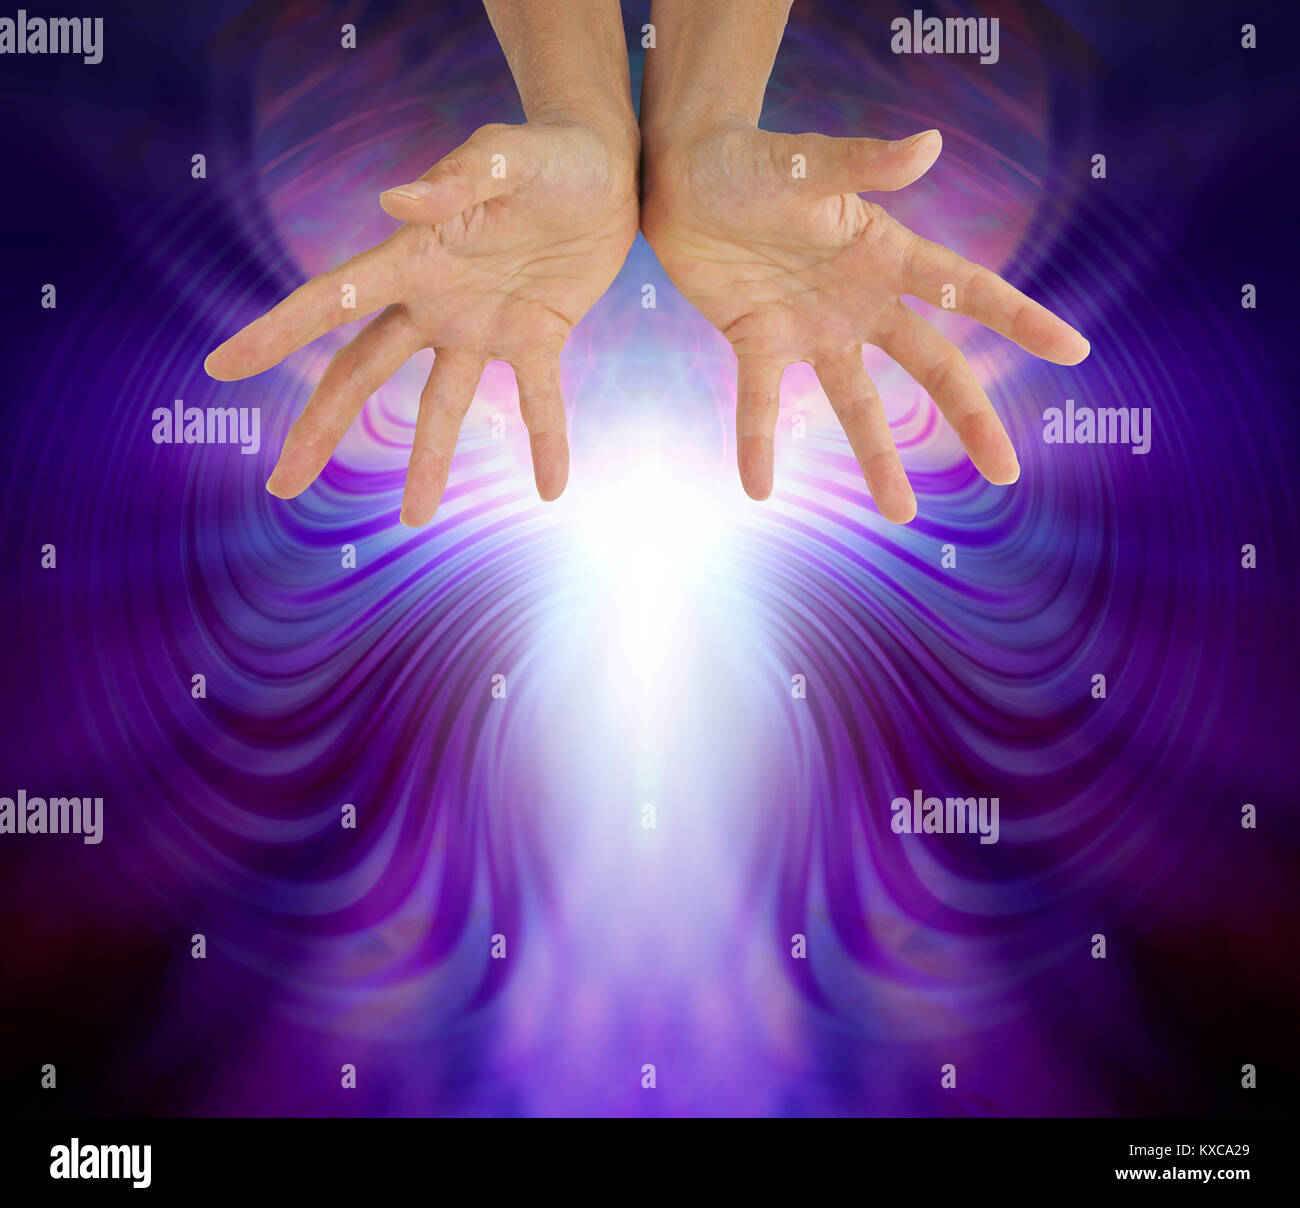 Quantum di energia di guarigione - mani tese bella di rilevamento quantico di energia di guarigione con copia spazio sottostante Foto Stock